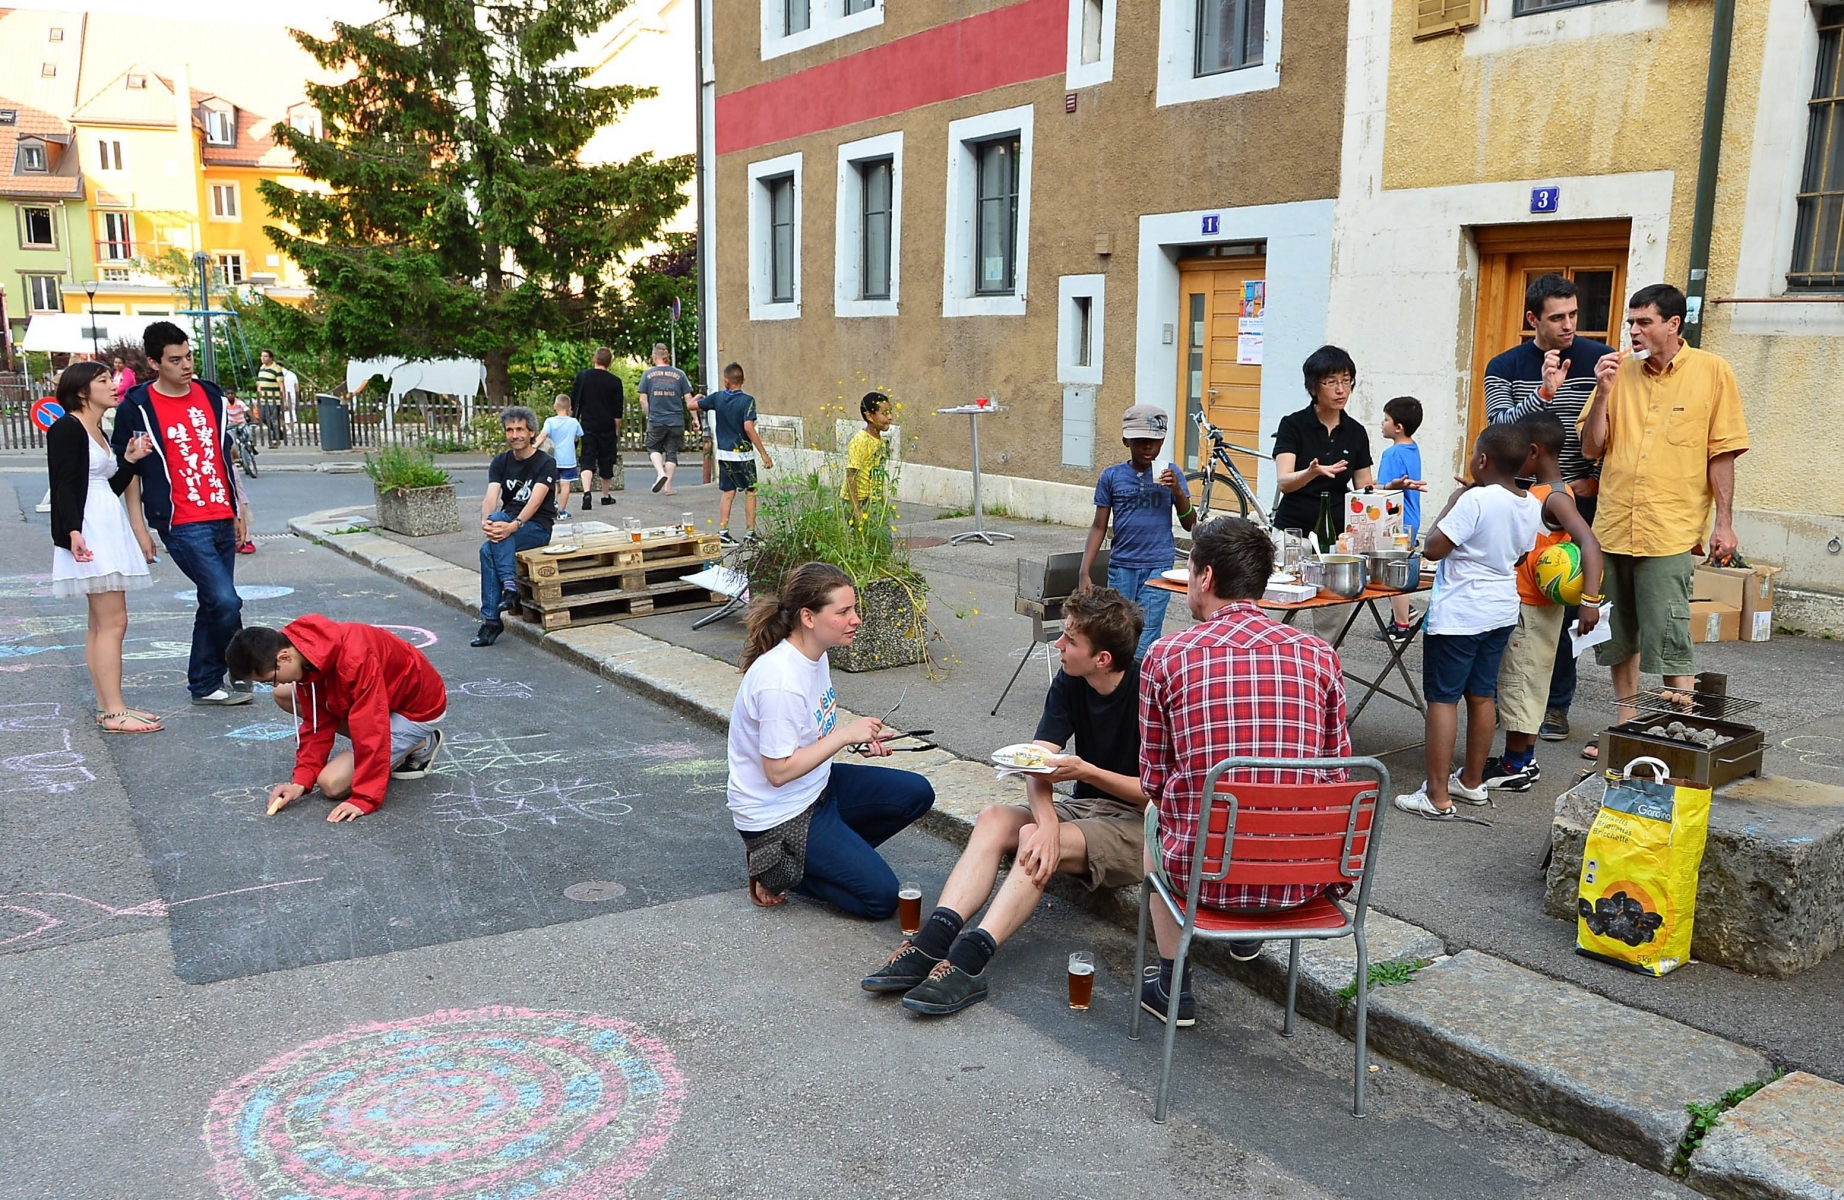 La fete des voisins:  ici rue de la Serre 



La Chaux-de-Fonds 13 juin 2014

Photo R Leuenberger LA CHAUX-DE-FONDS